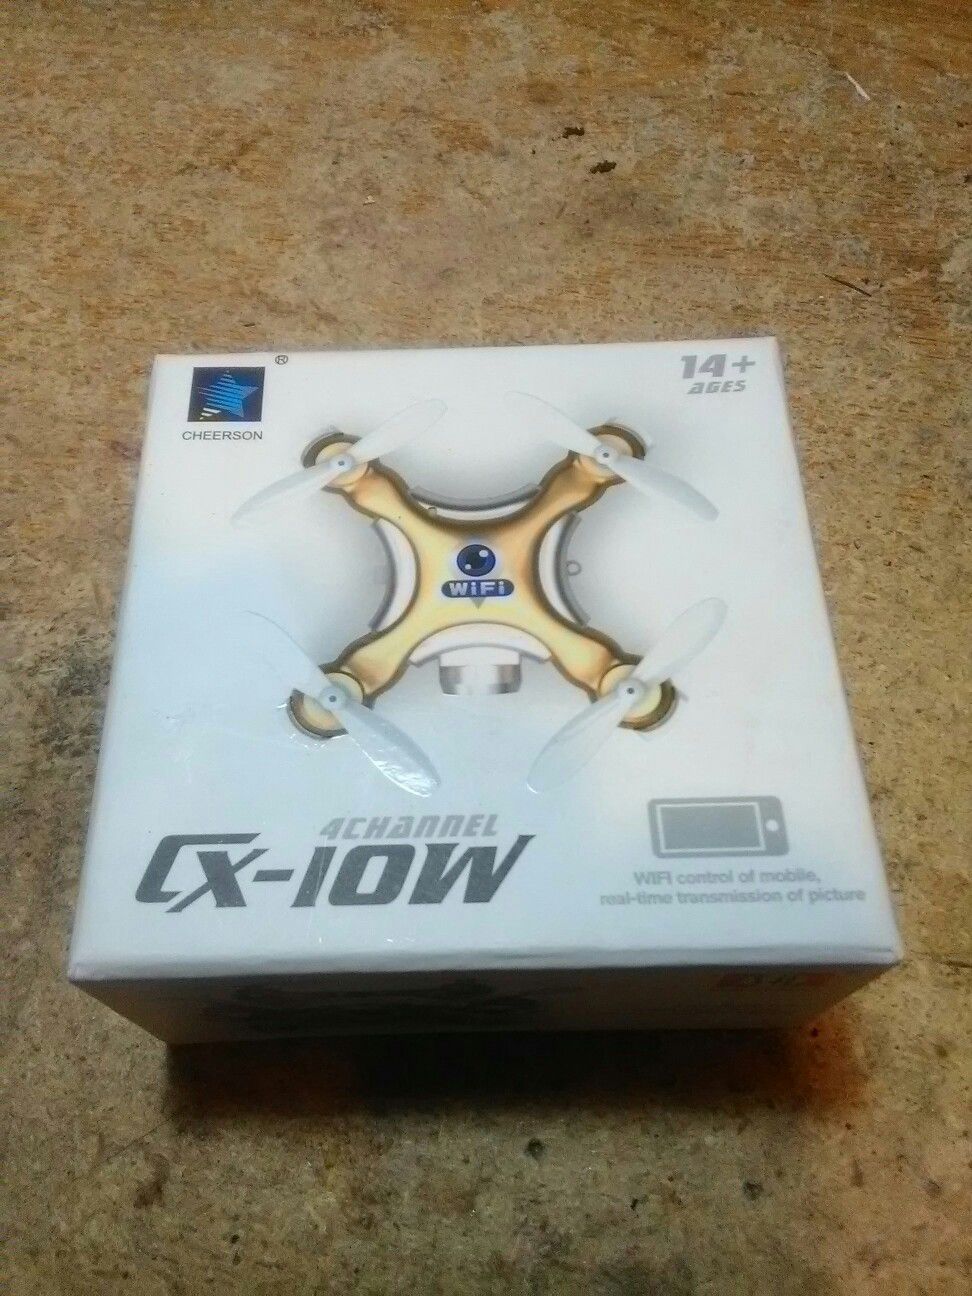 CX-10W Drone